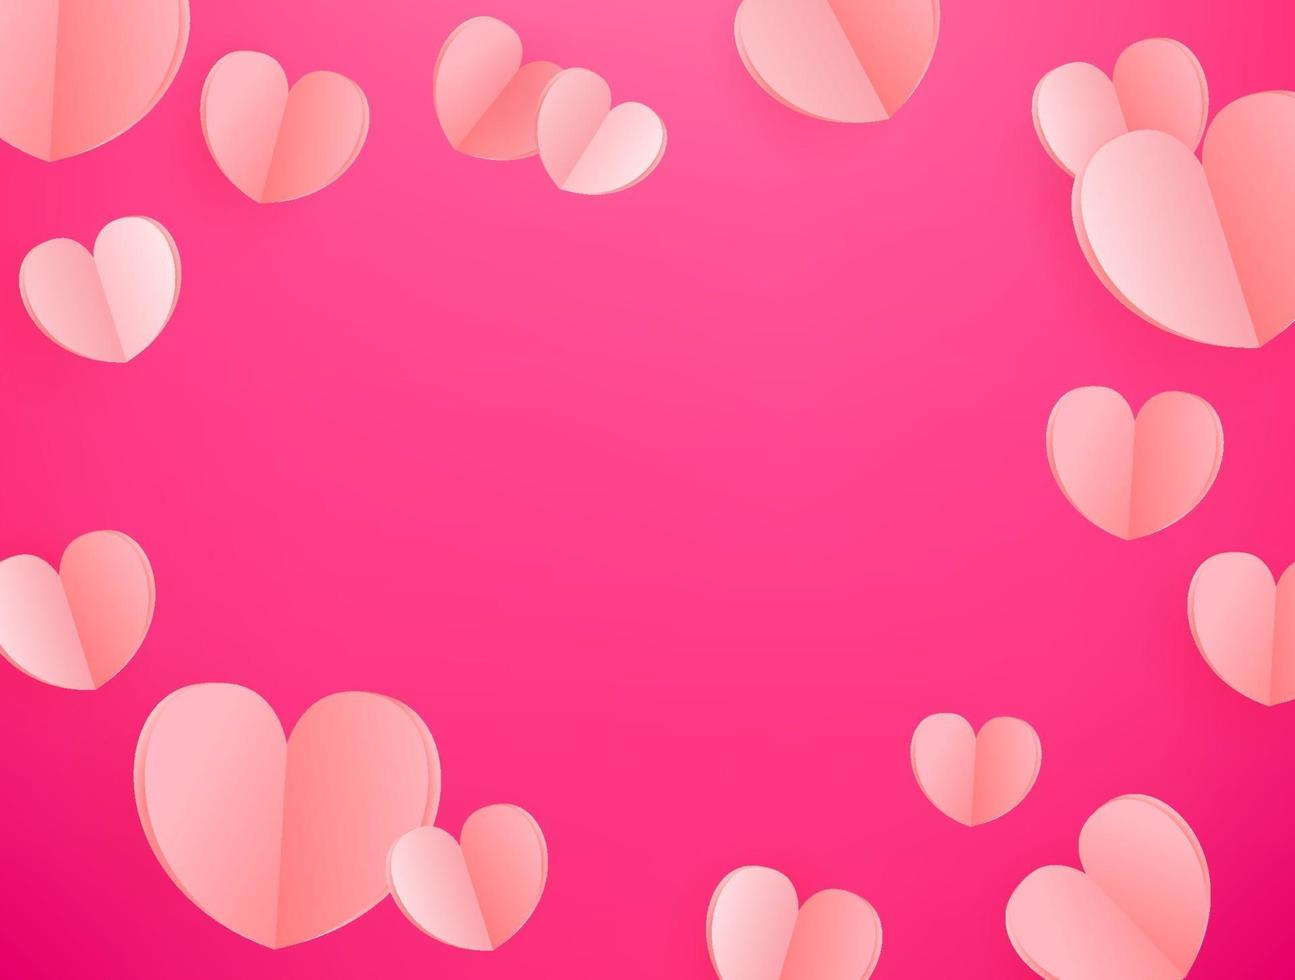 vektor bakgrund av rosa hjärtan. mall för gratulationskort, omslag, presentation